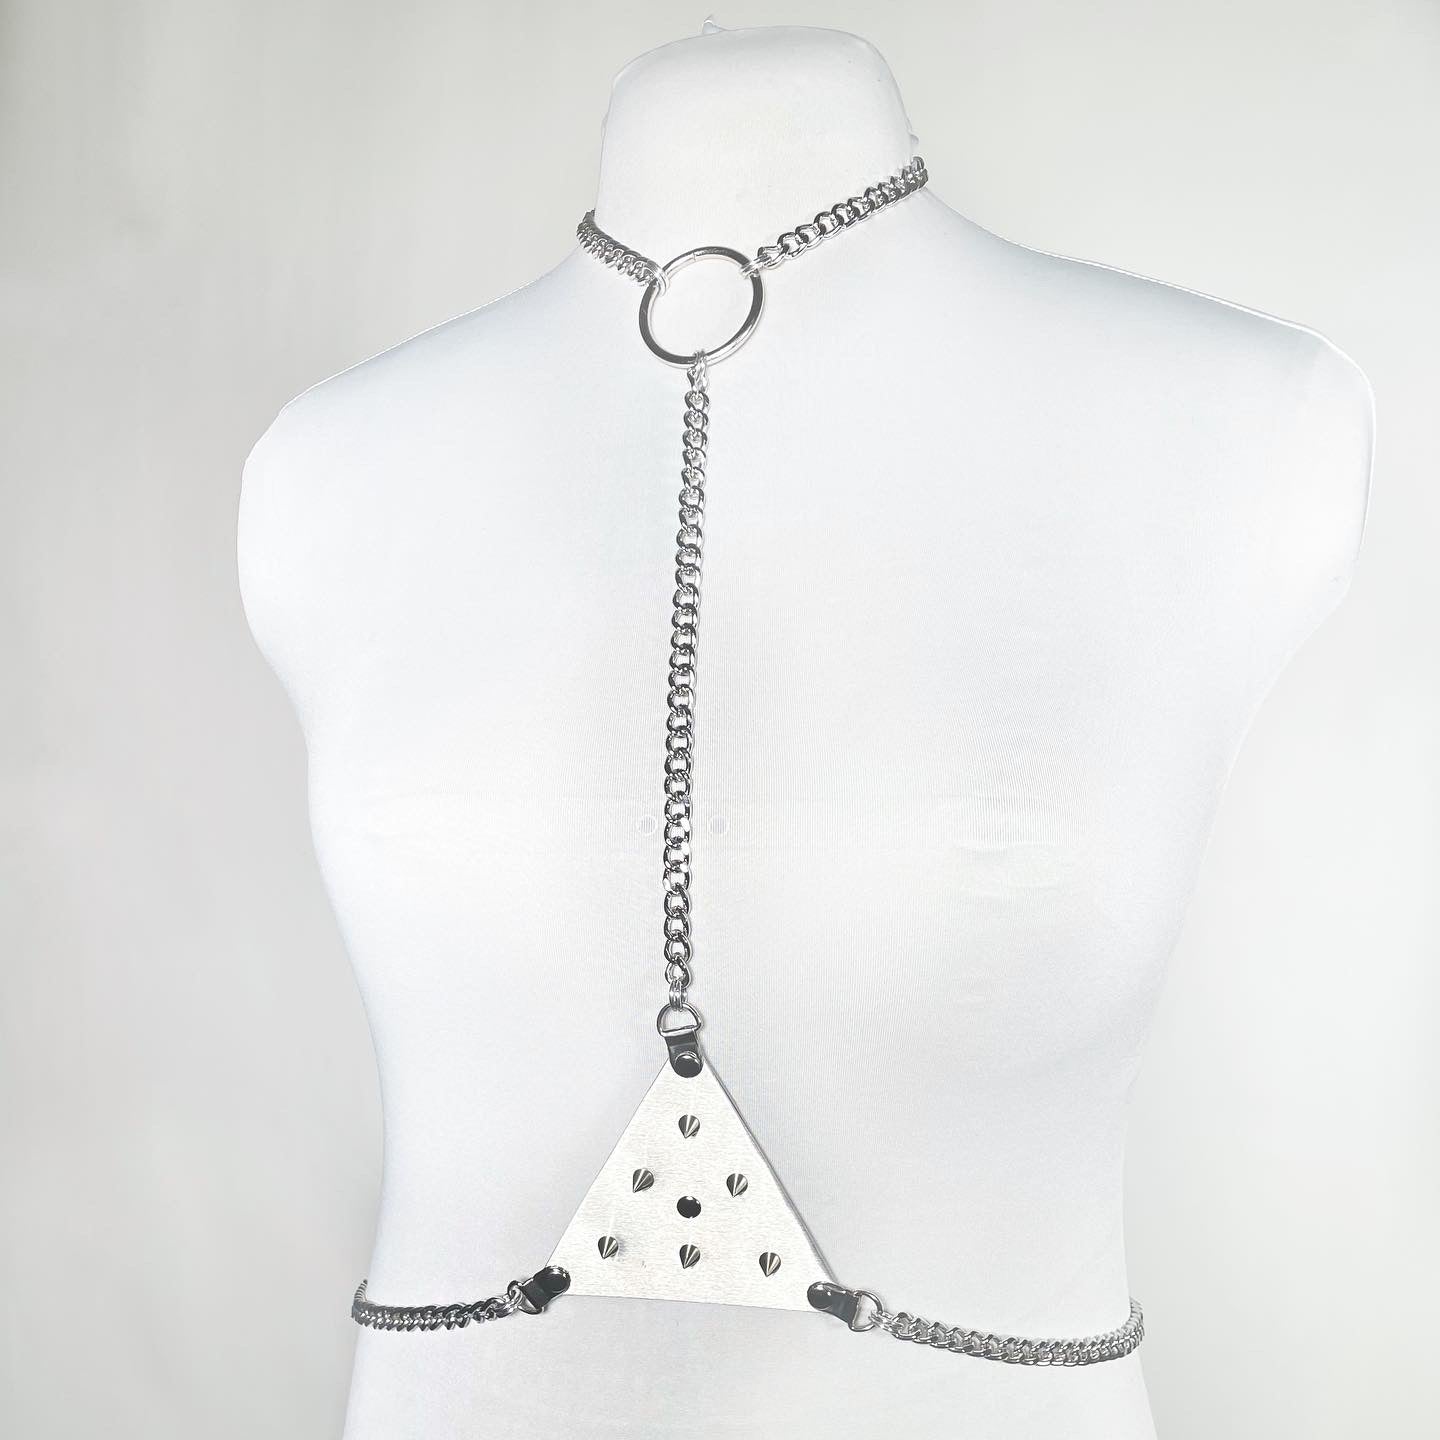 The Nomi Chain Harness